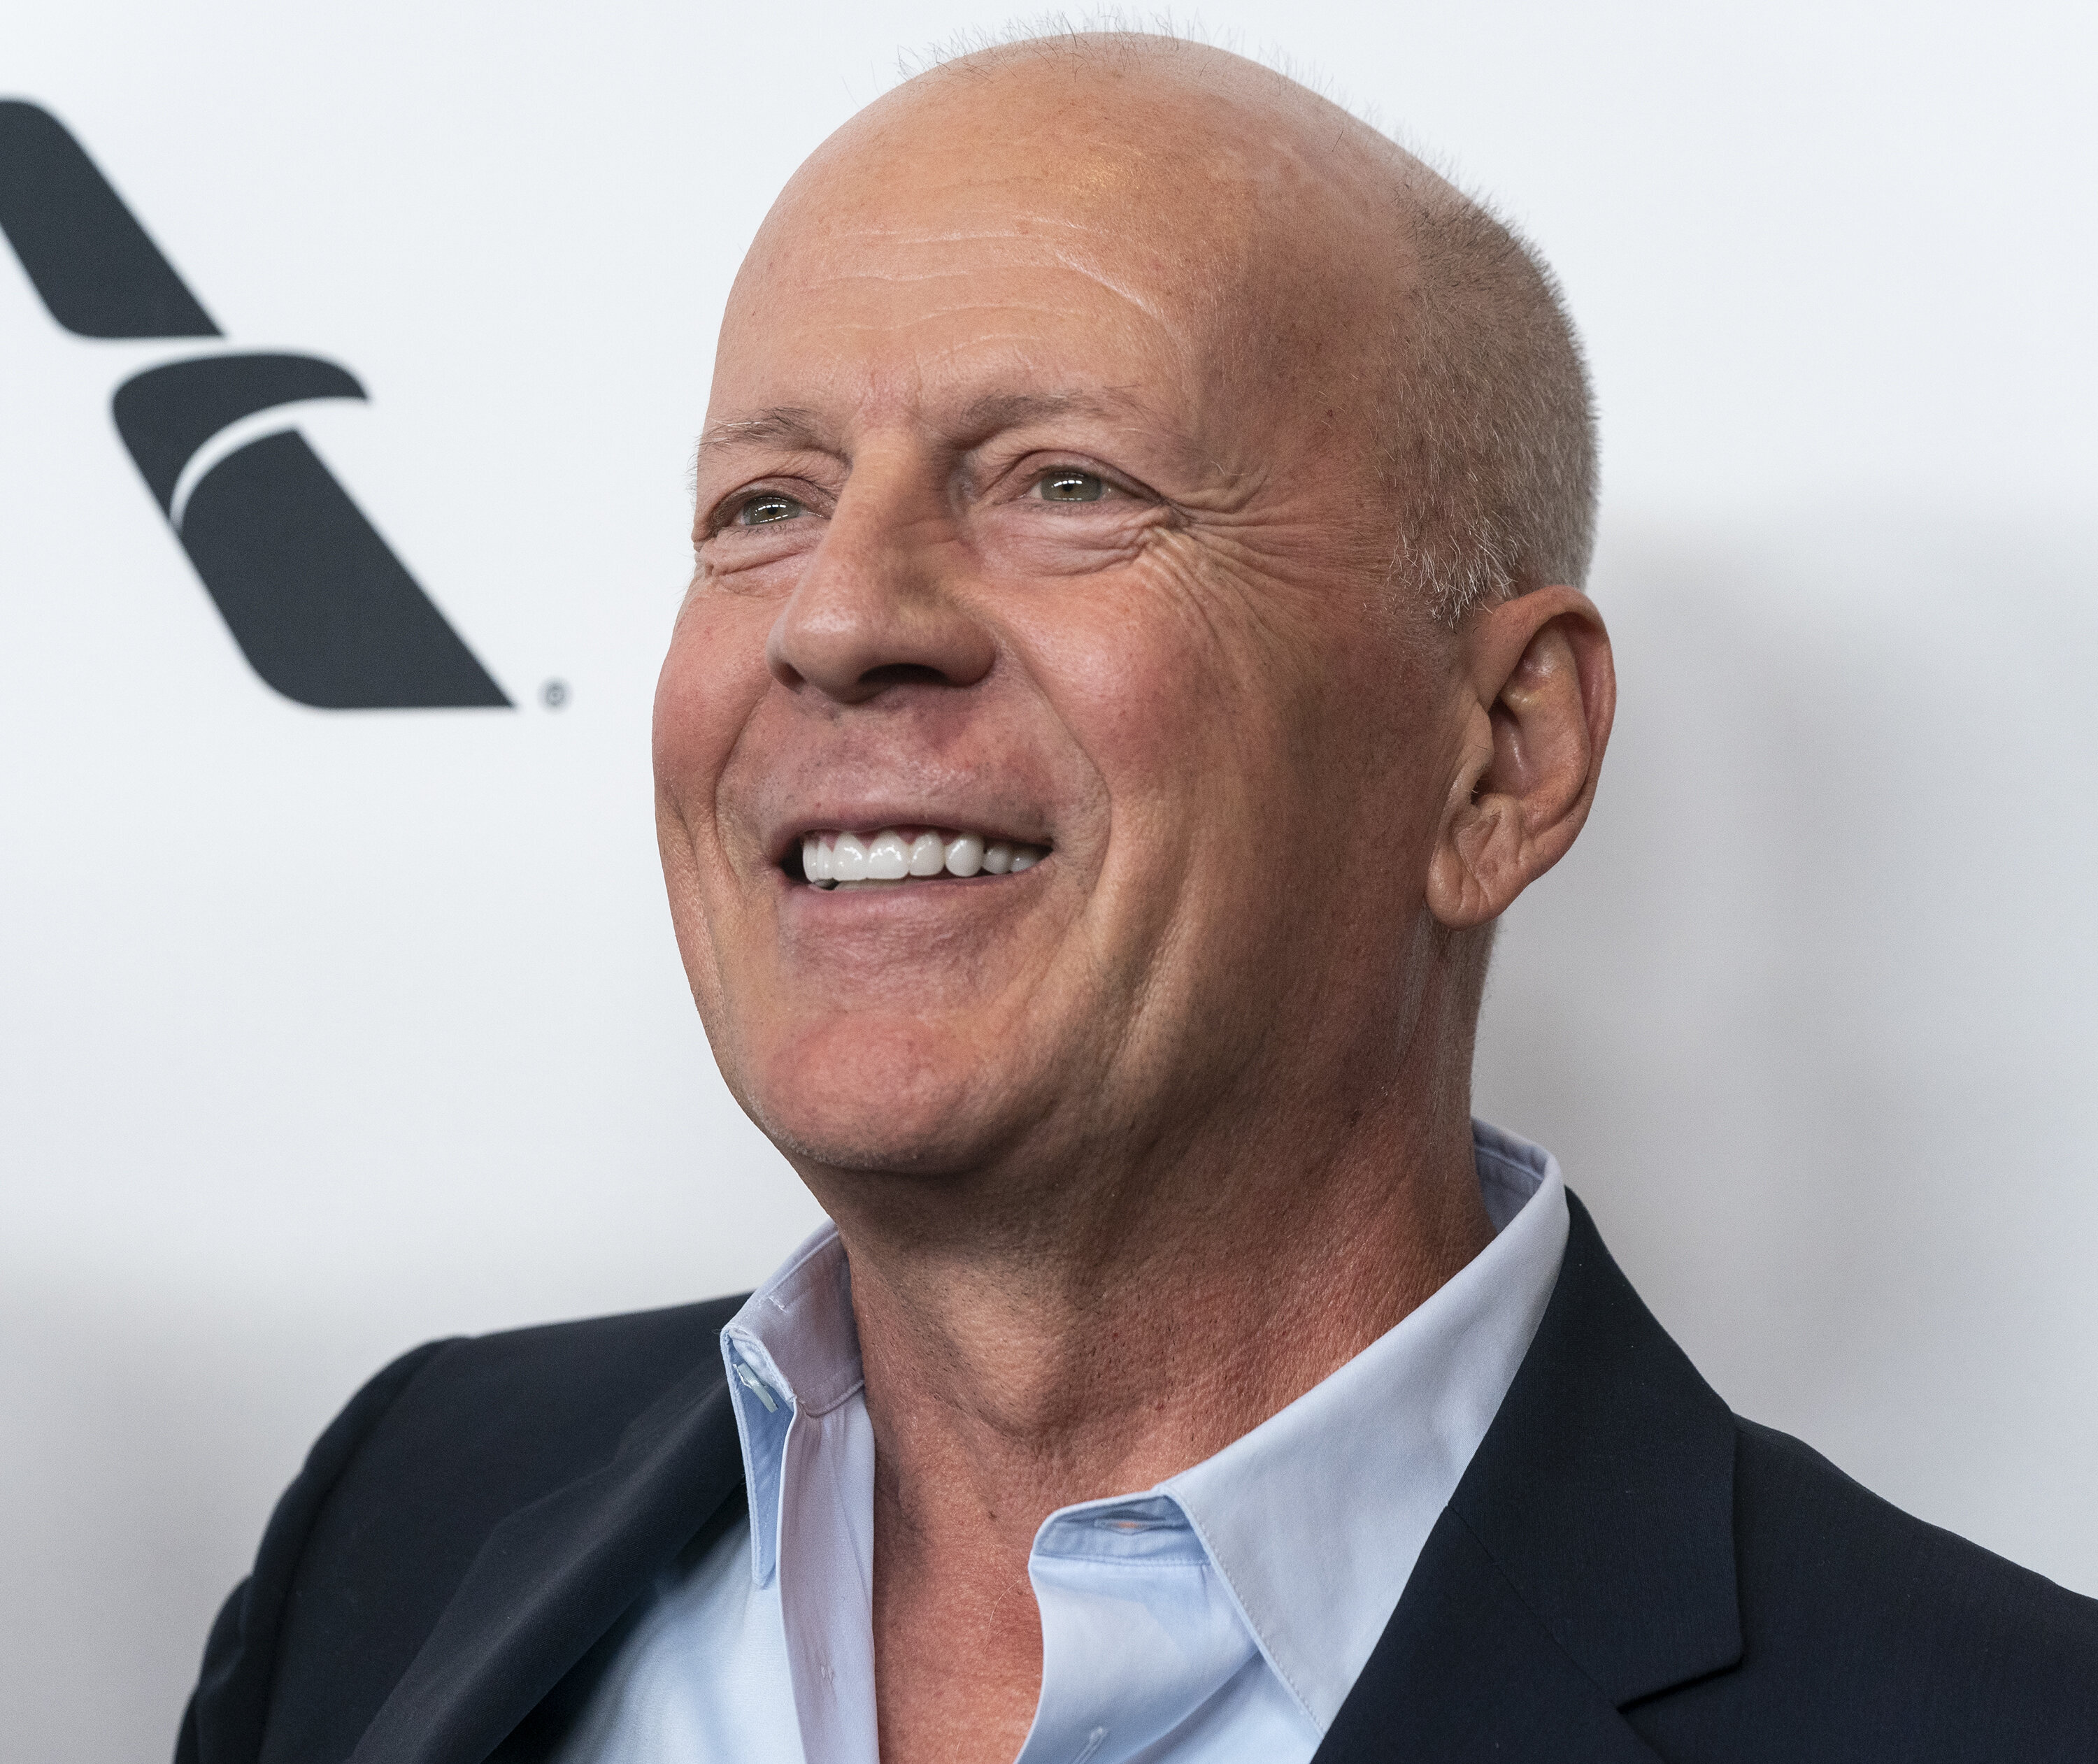 Bruce Willis photographié sans masque dans un commerce, il s'explique